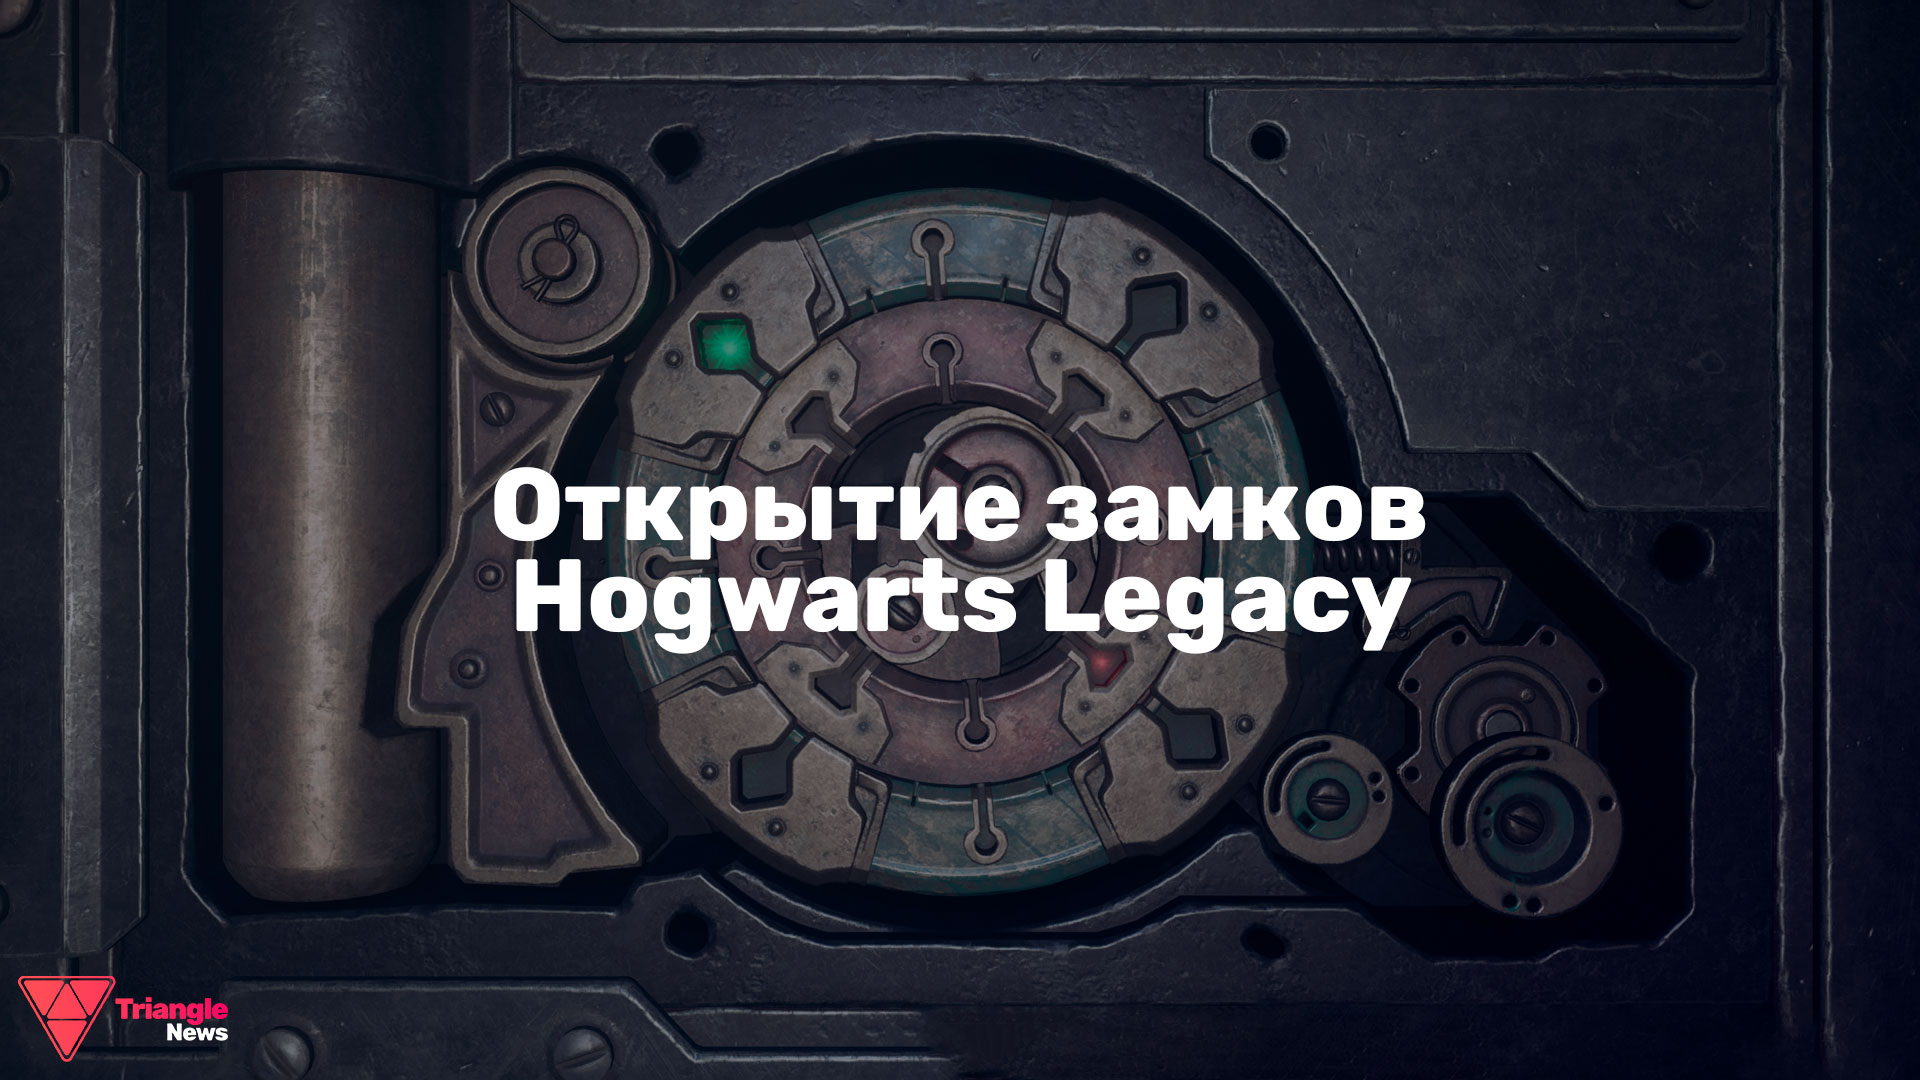 В Hogwarts Legacy существует заклинание Алохомора, которое позволяет открывать замки на сундуках и дверях.